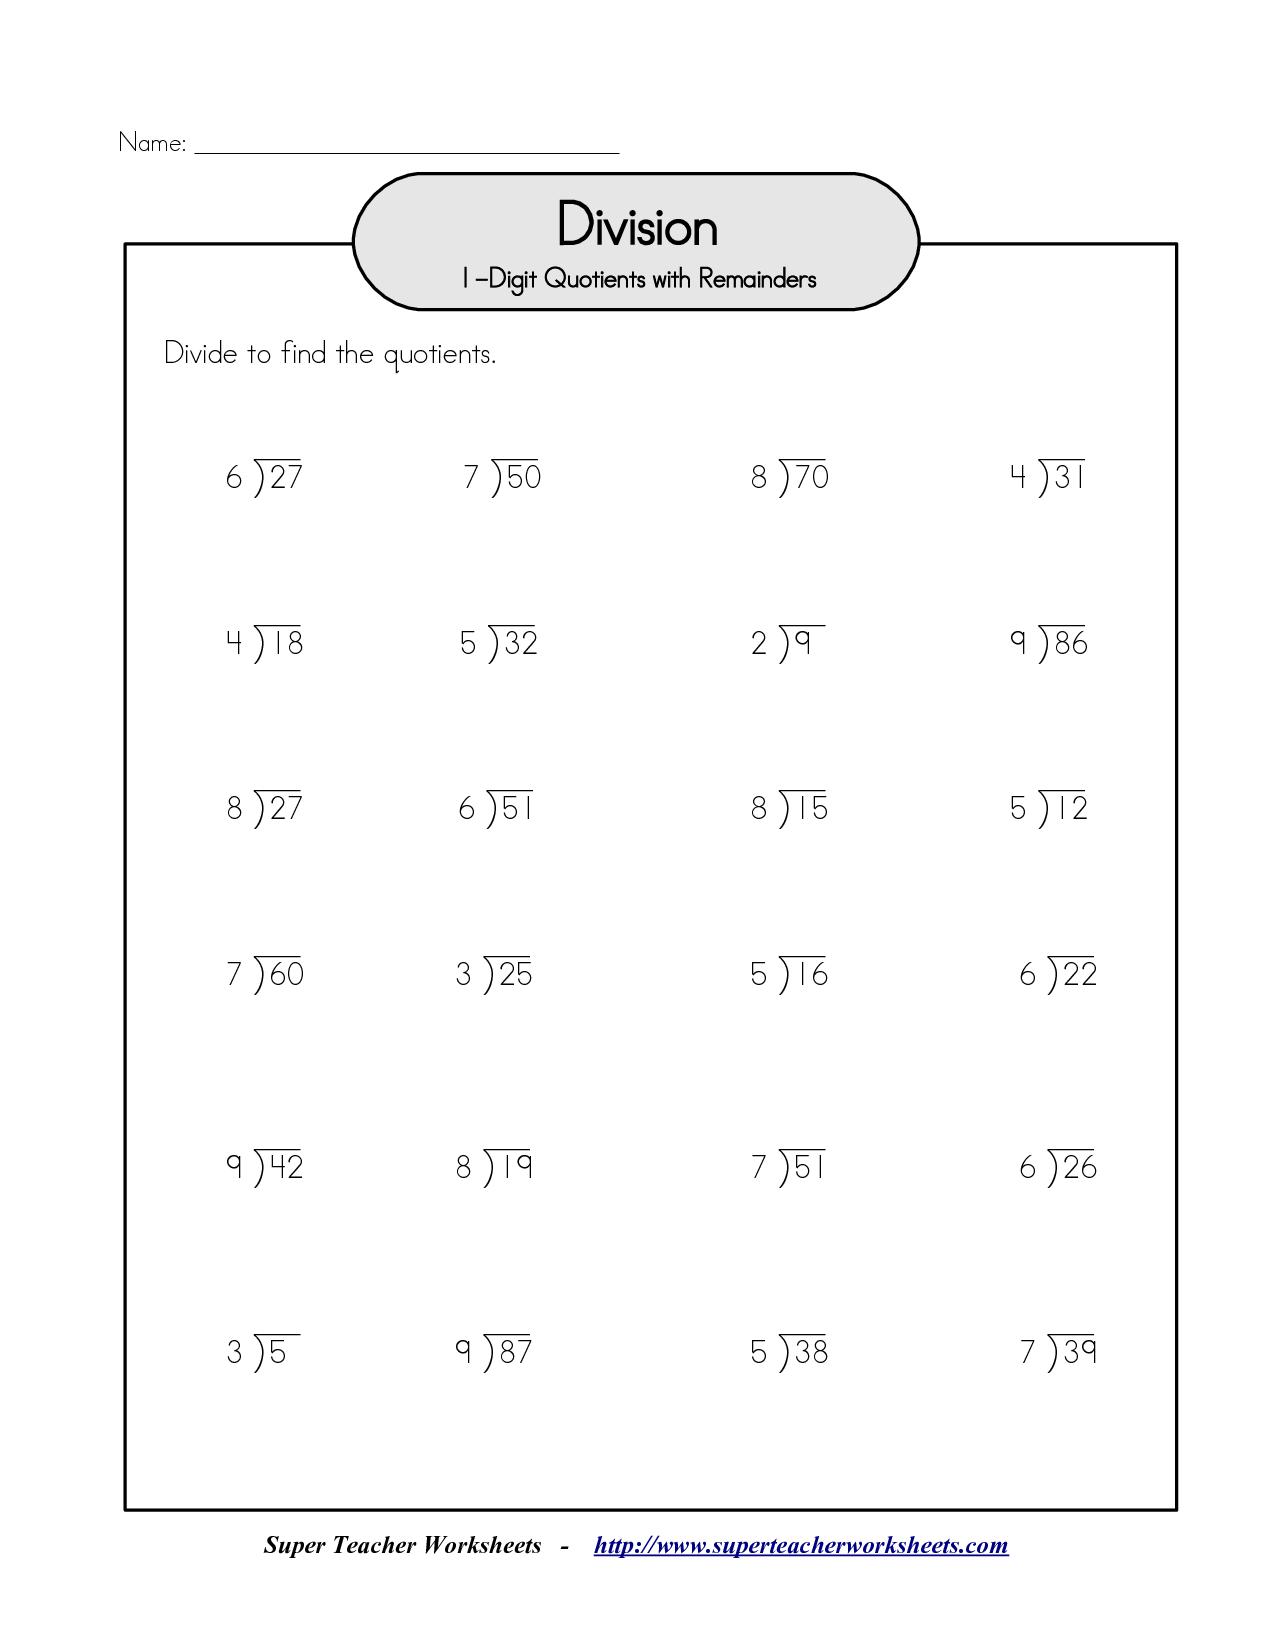 15-best-images-of-division-worksheets-2-2-digit-divisor-division-2-digit-by-1-digit-division